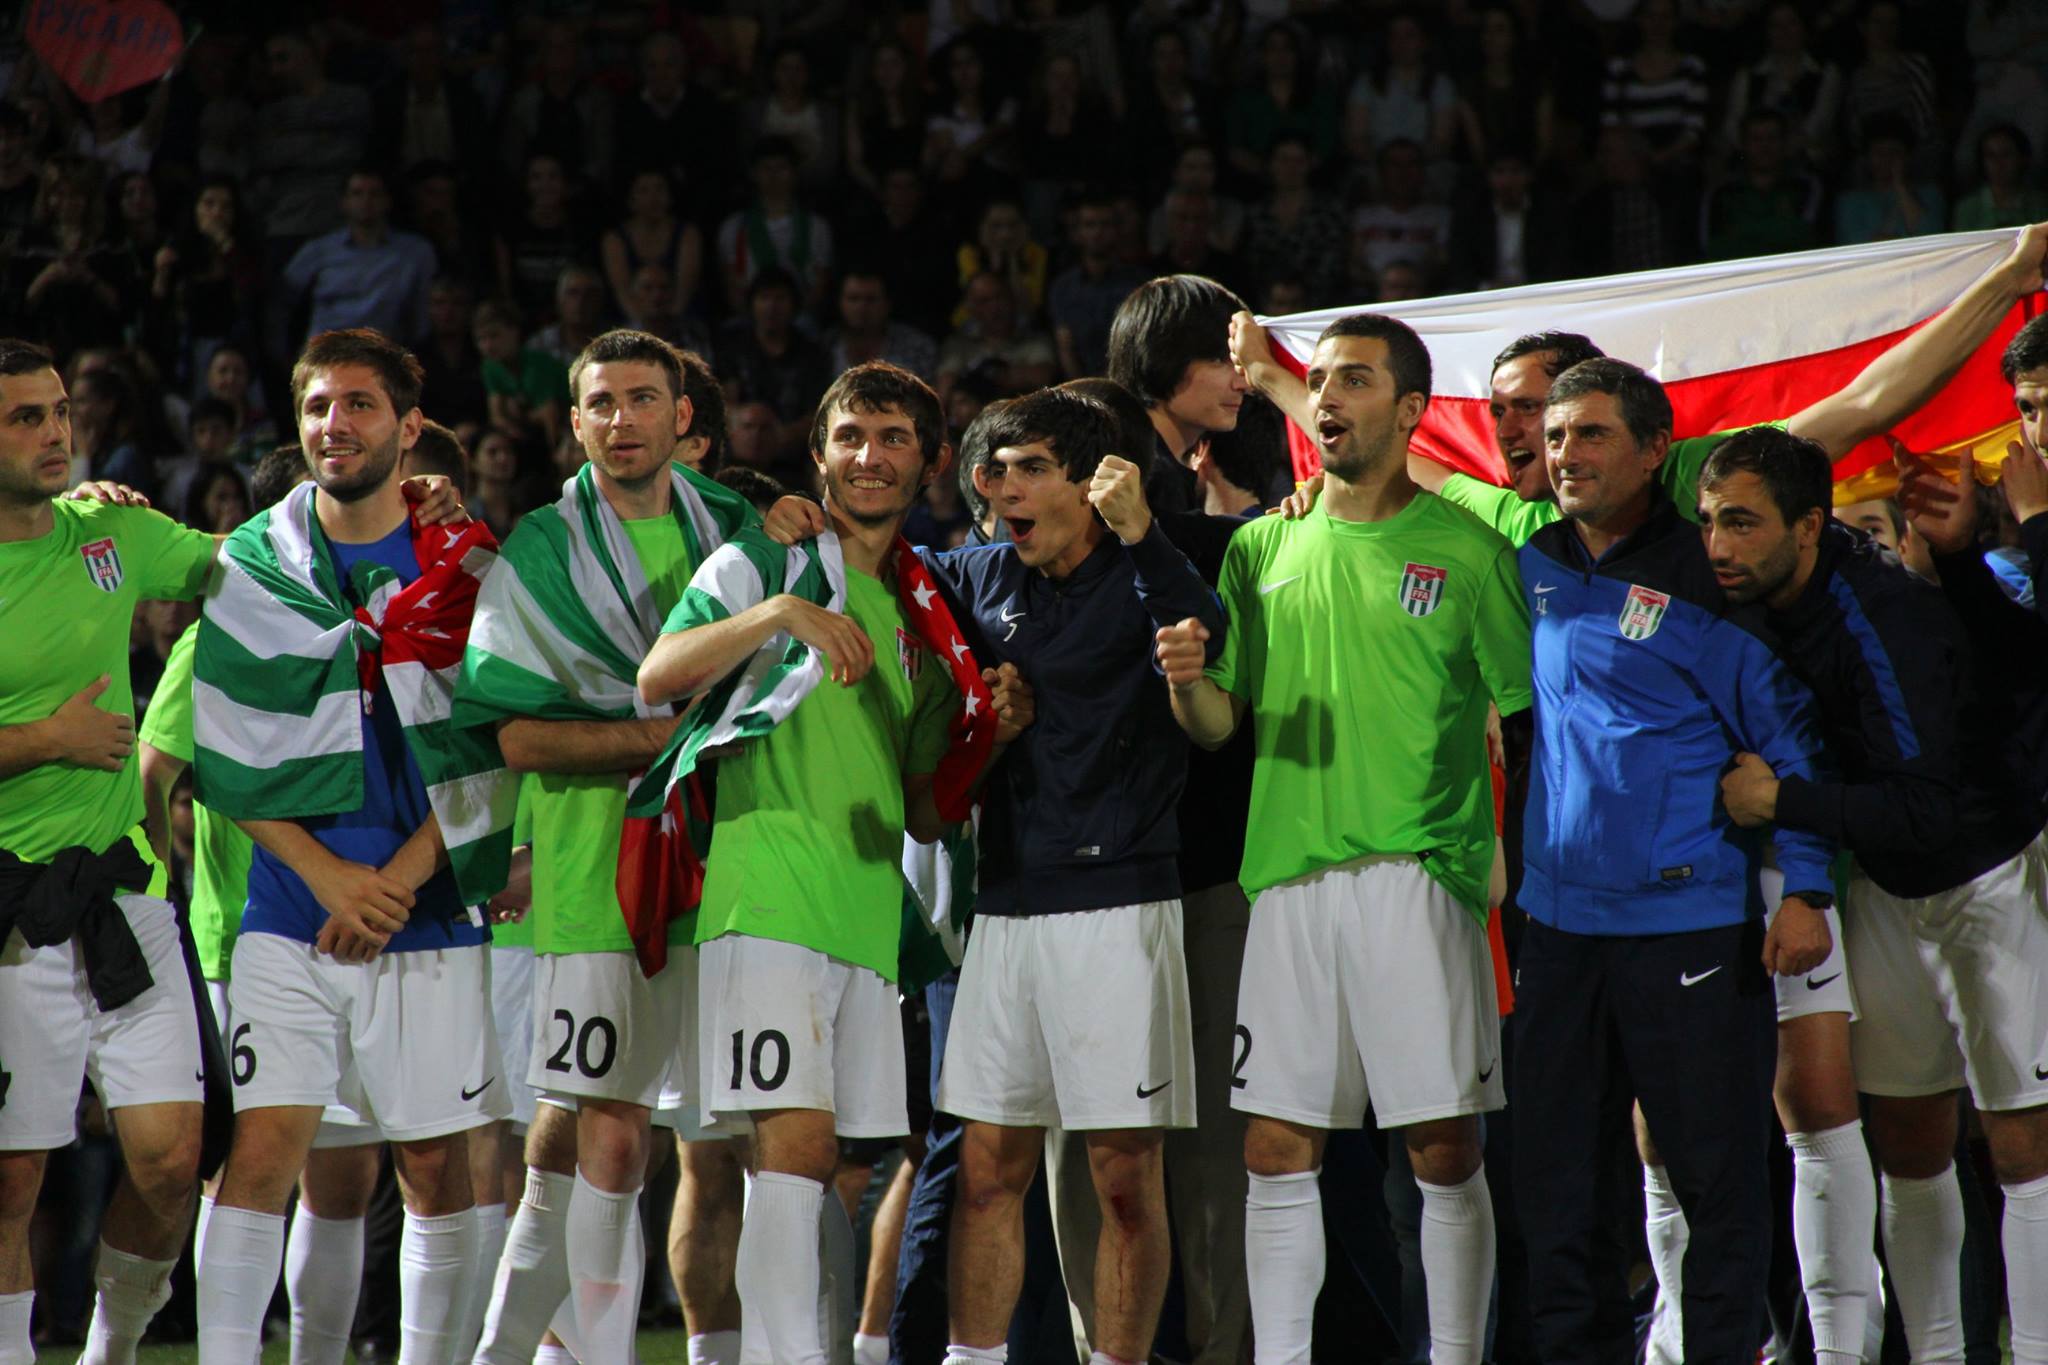 Afbeeldingsresultaat voor abkhazia football champion